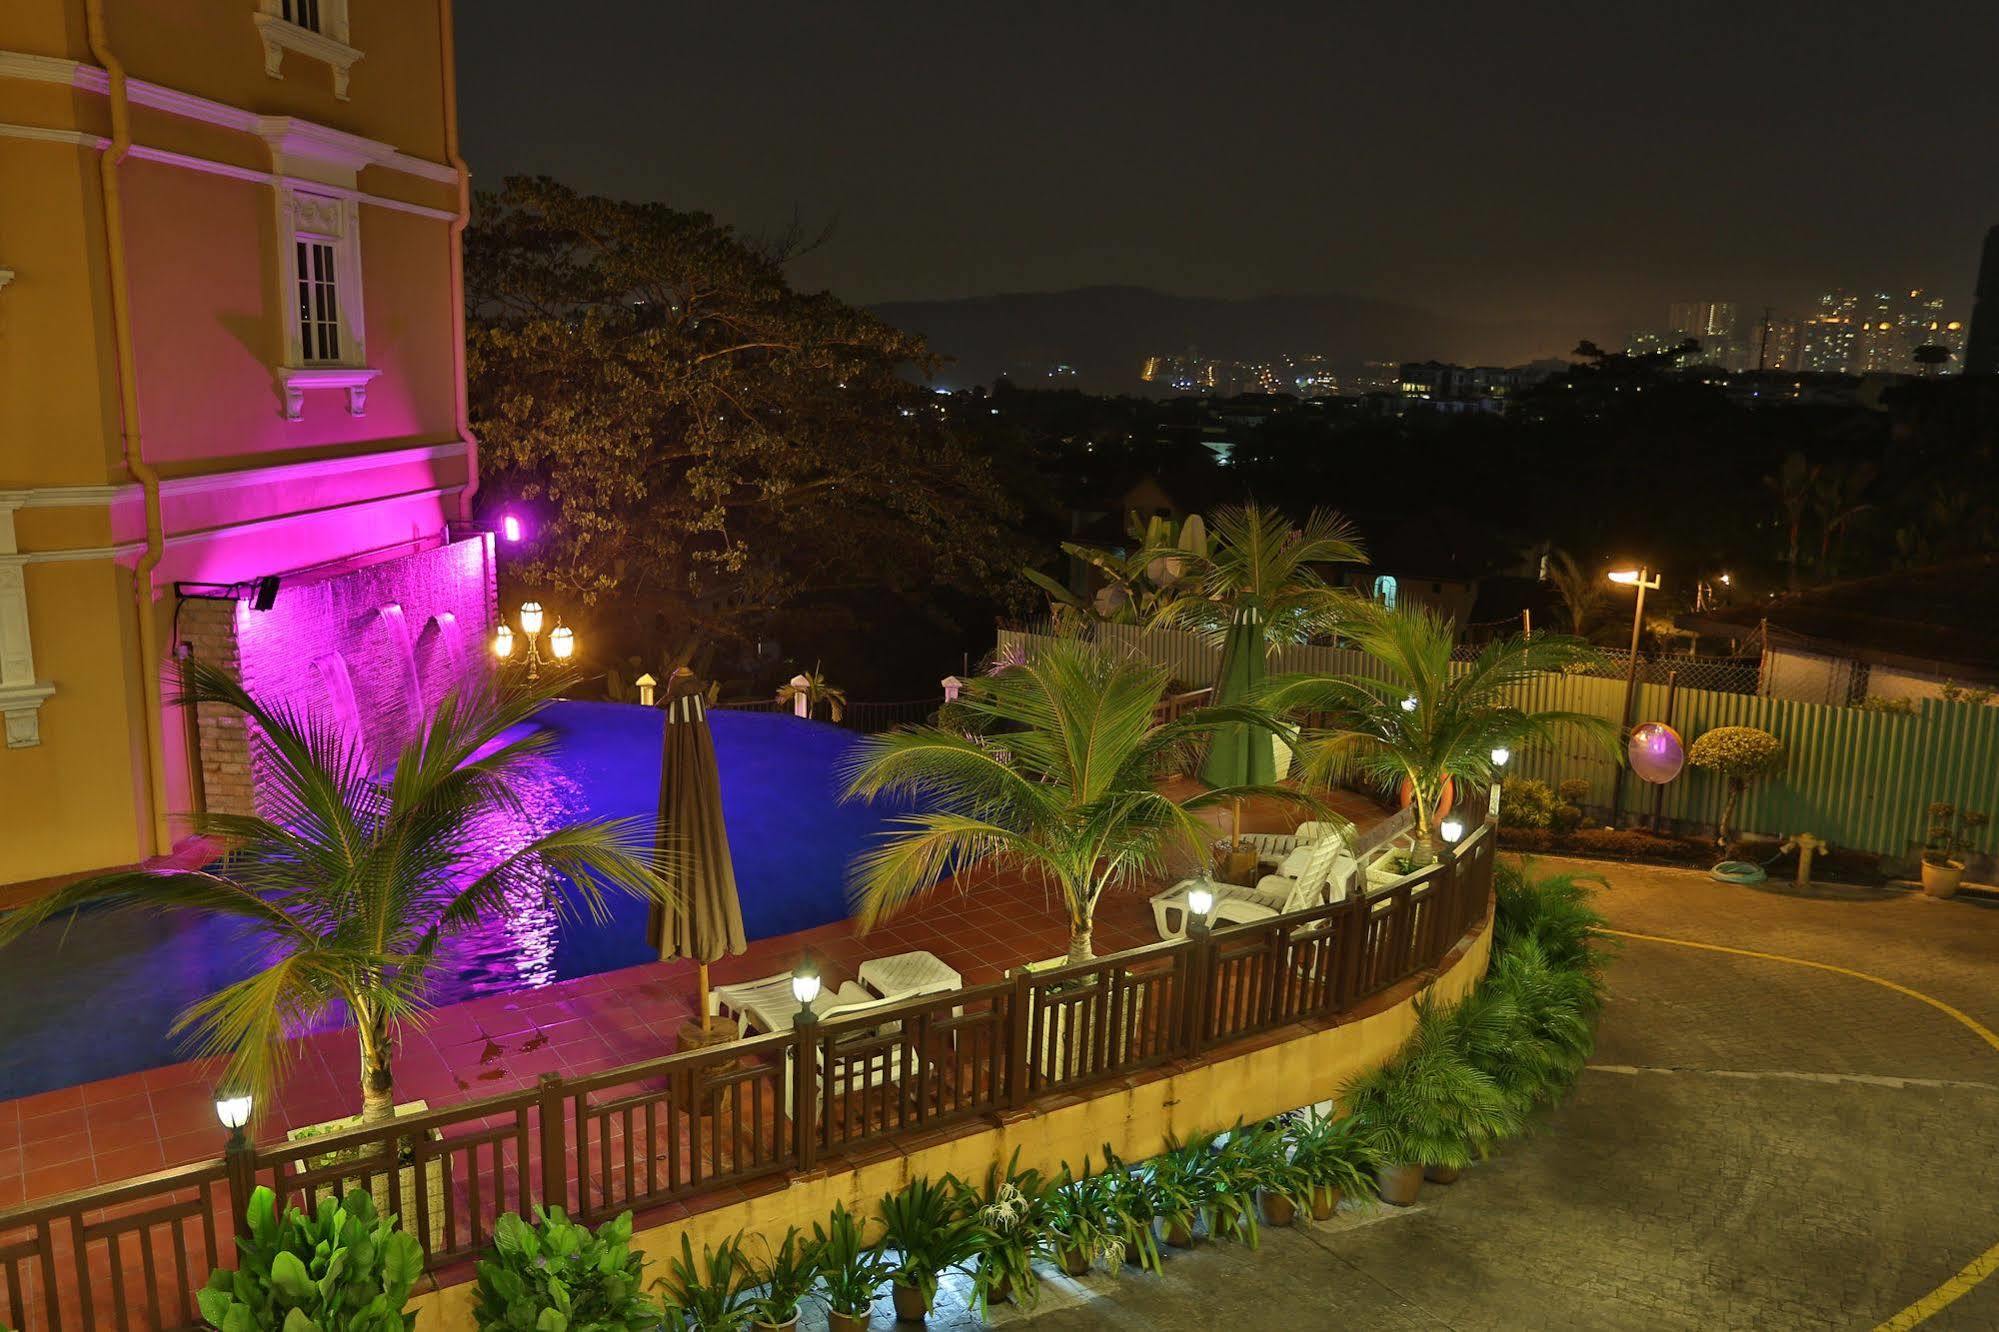 Kapitan Hill @ Cempenai Parc Residences Bukit Damansara Экстерьер фото